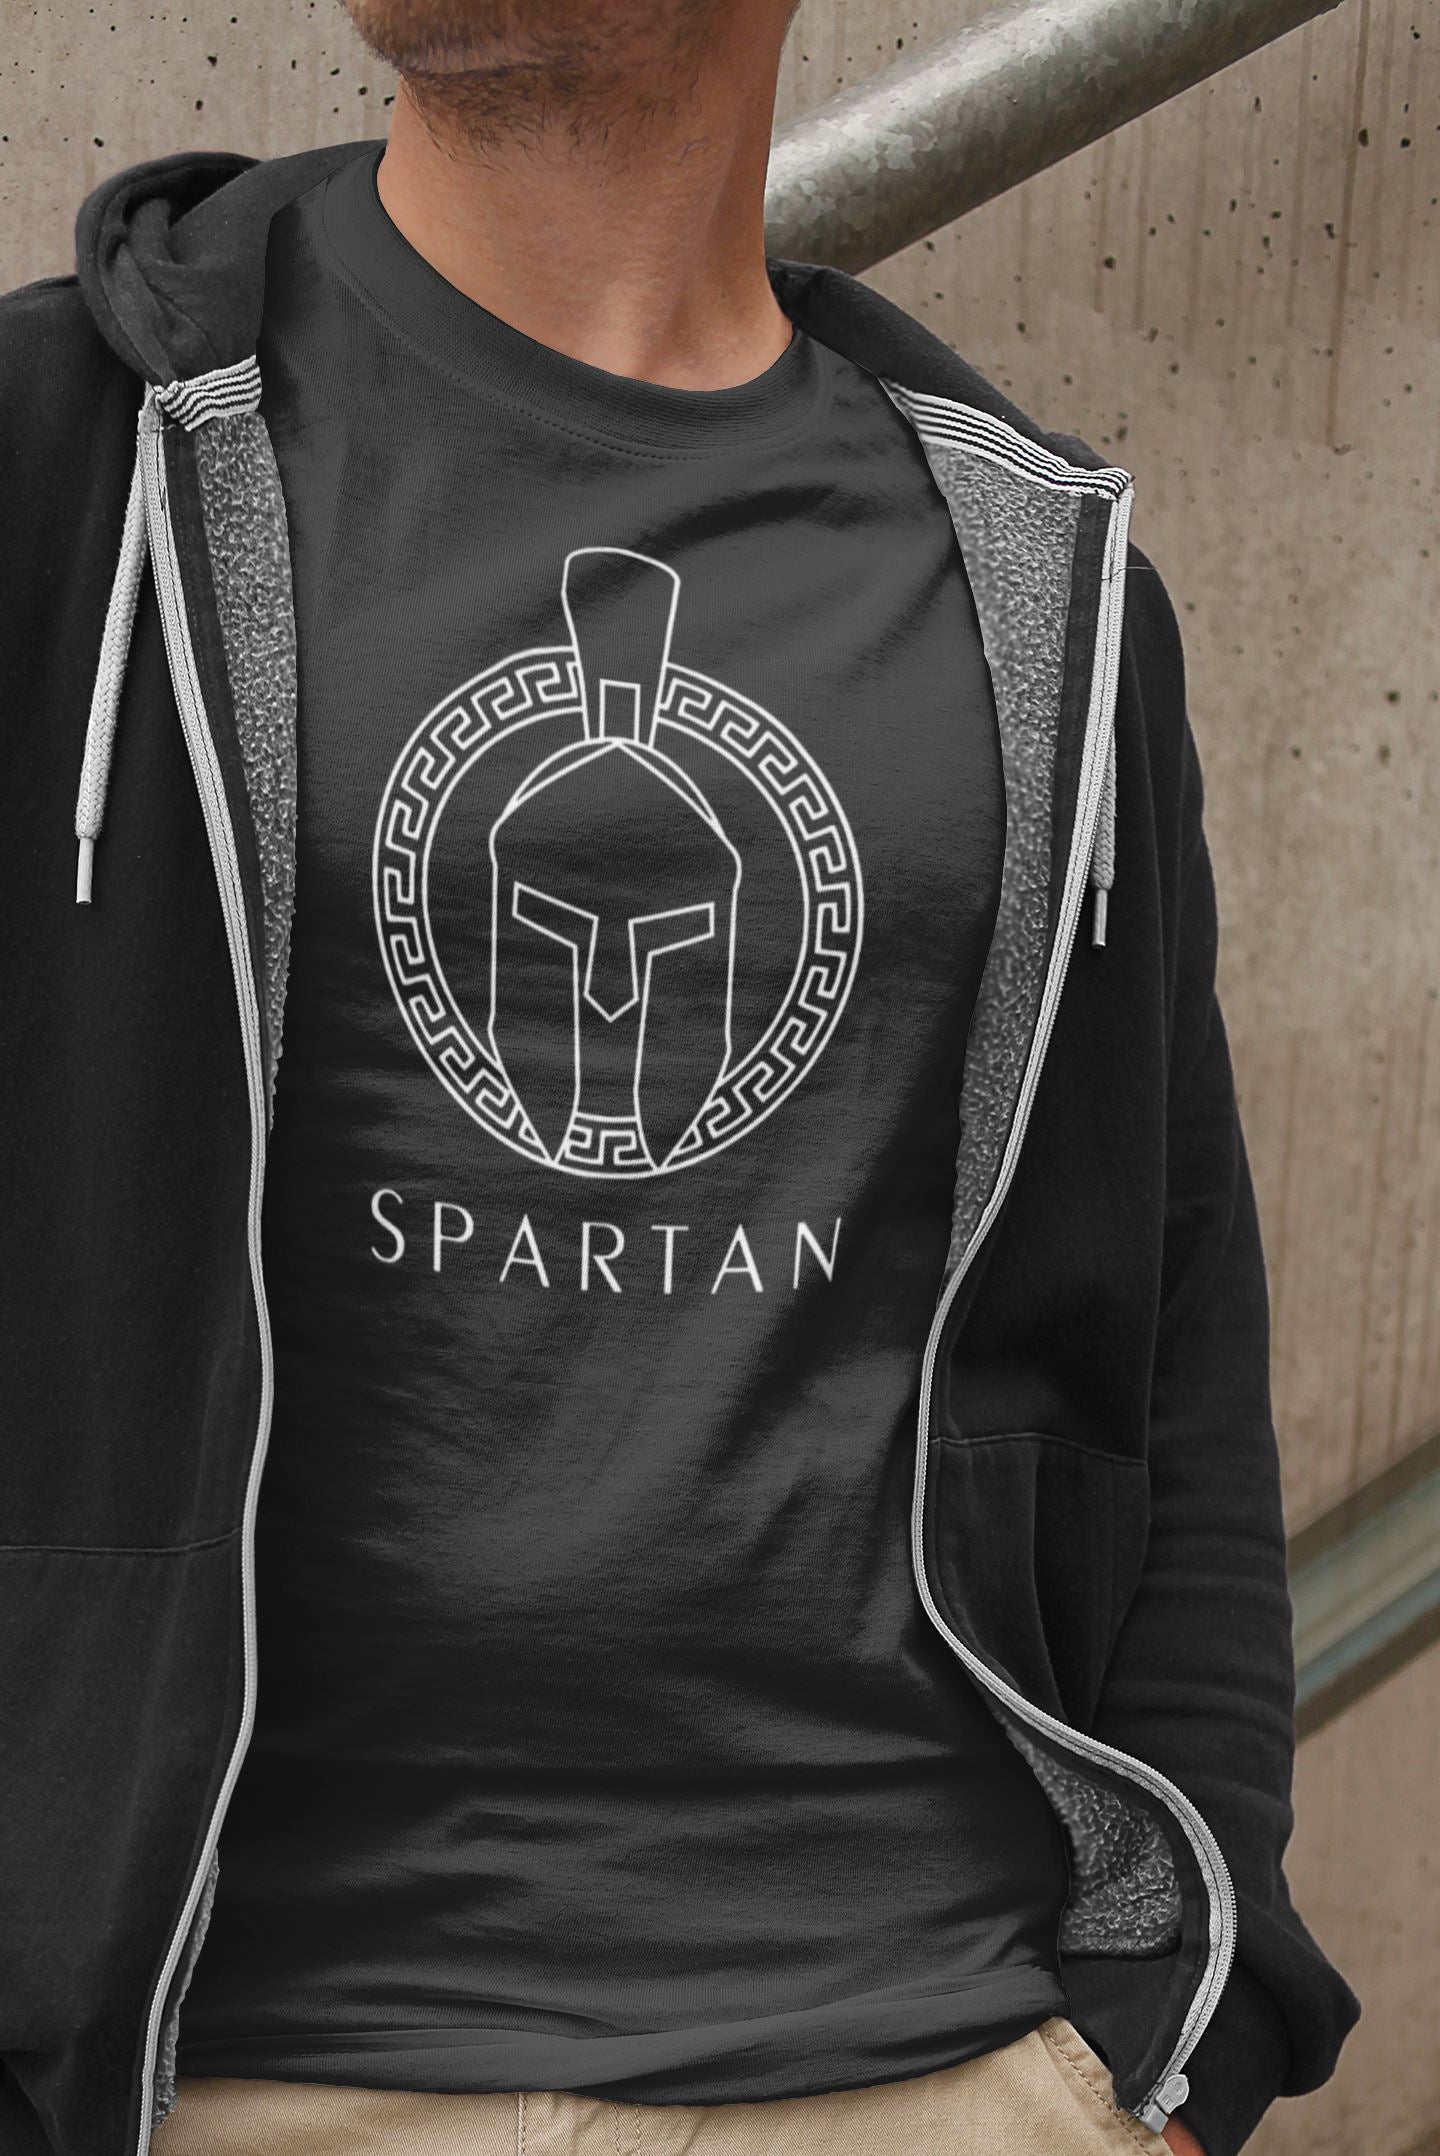 Spartans Caution this is spartan' Men's Premium T-Shirt